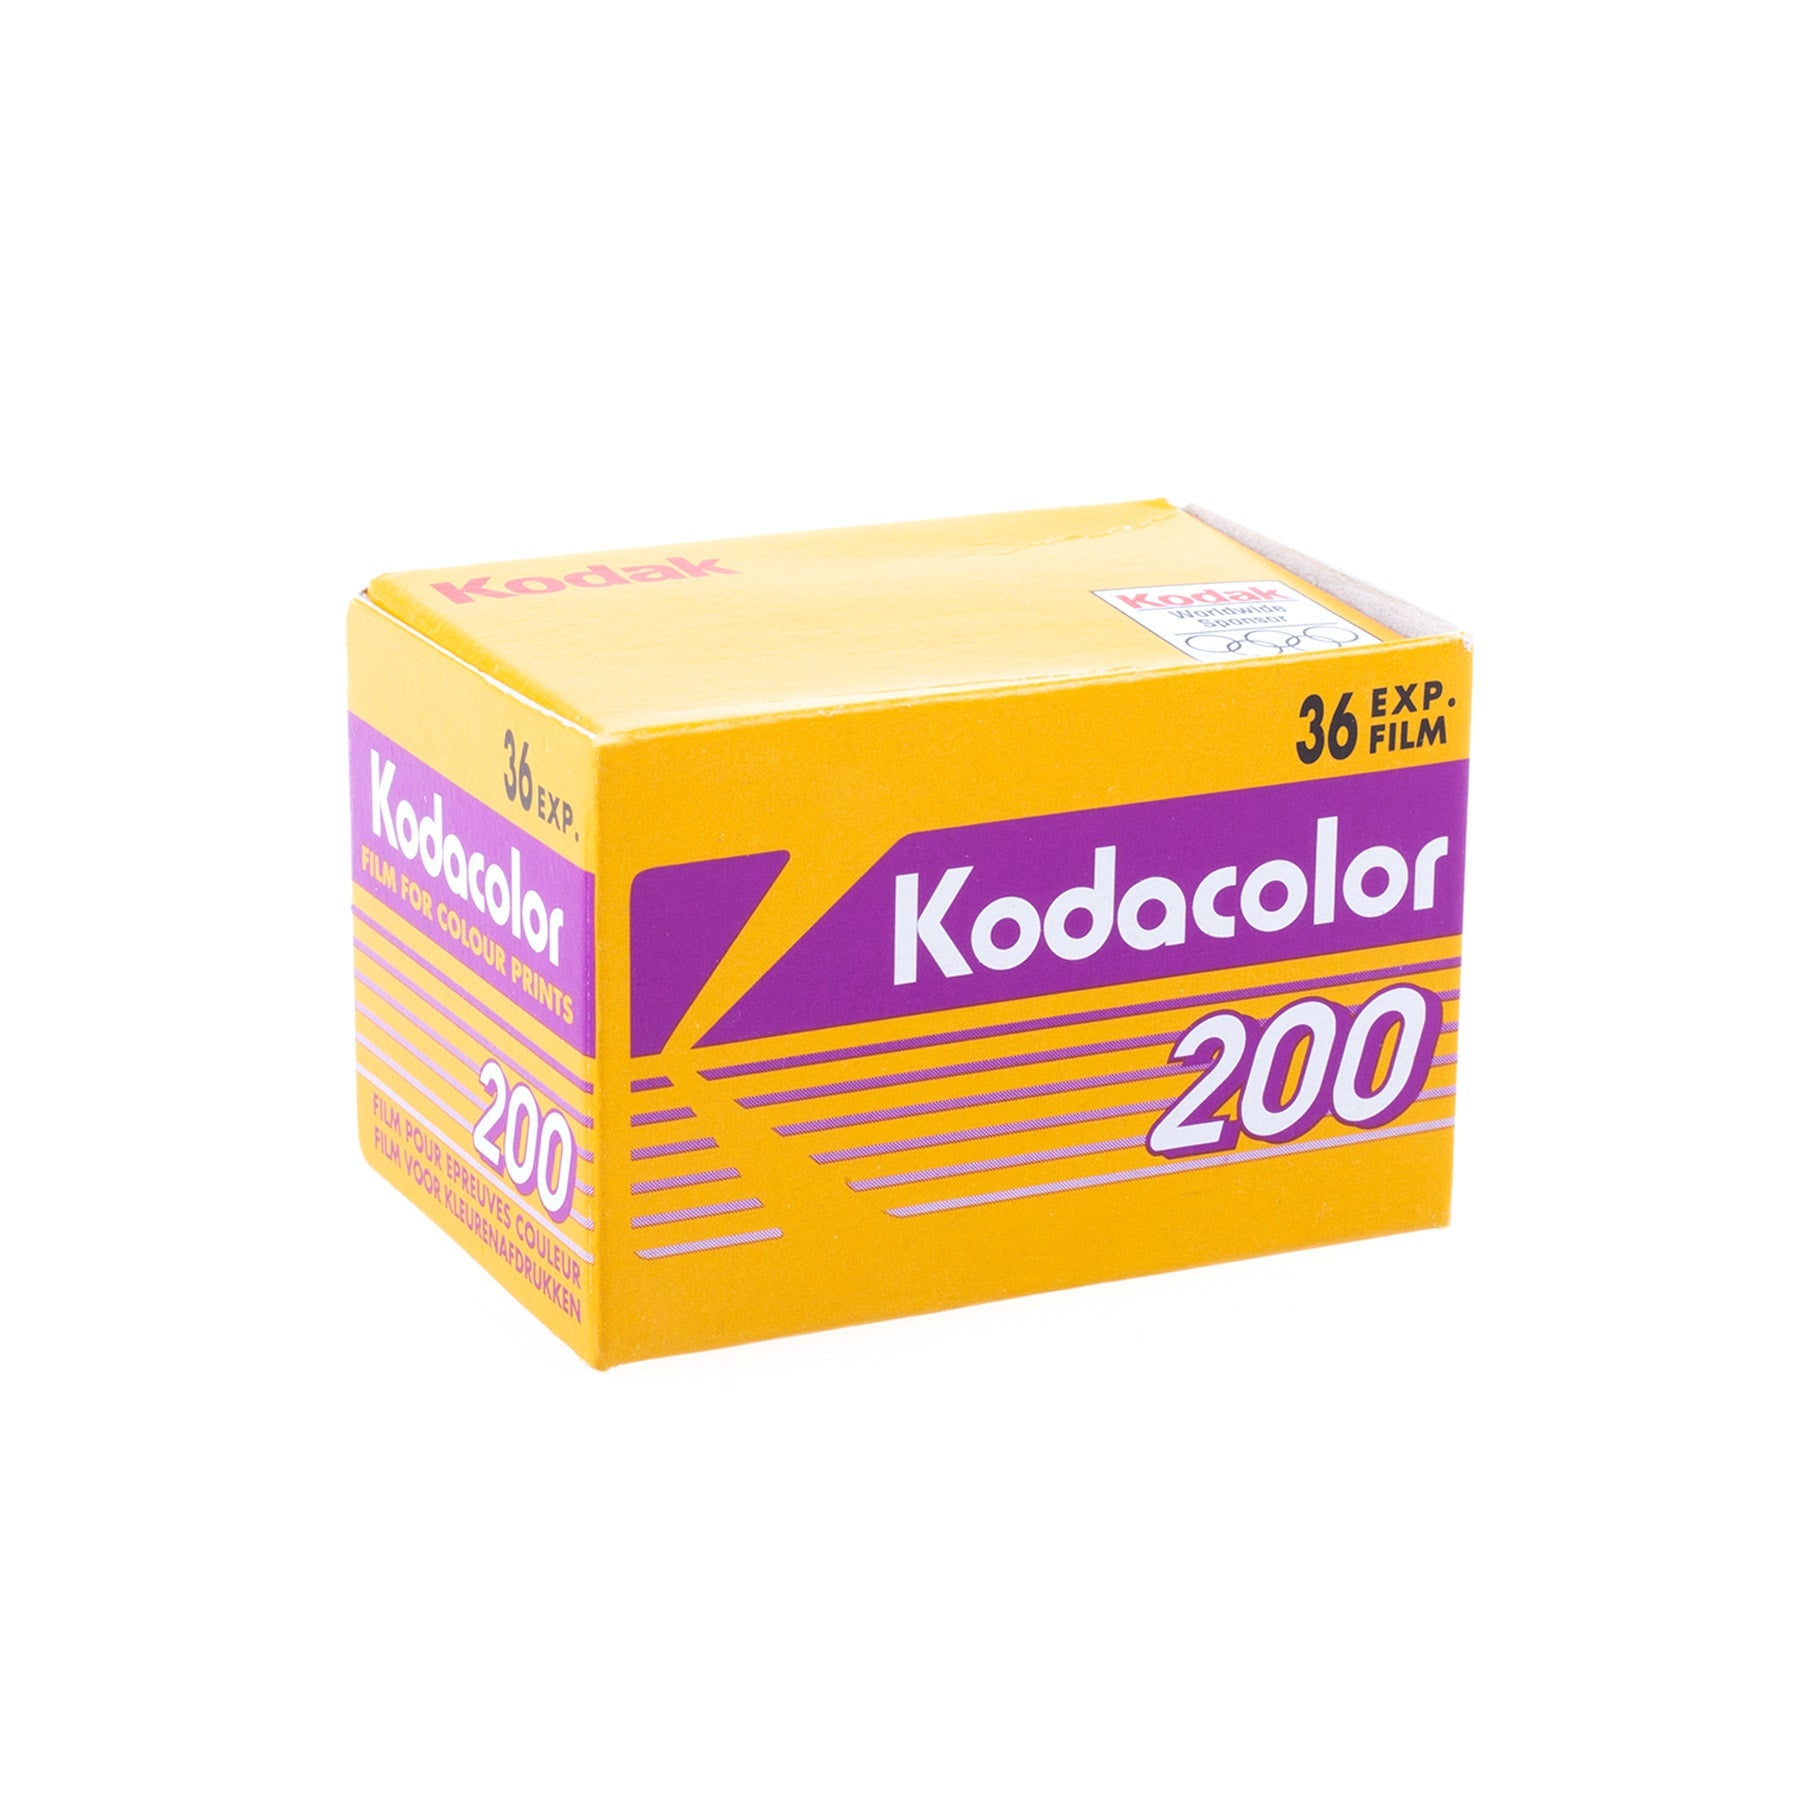 Kodak Kodacolor 35mm 200 ISO 36 exp. Dead stock 2005